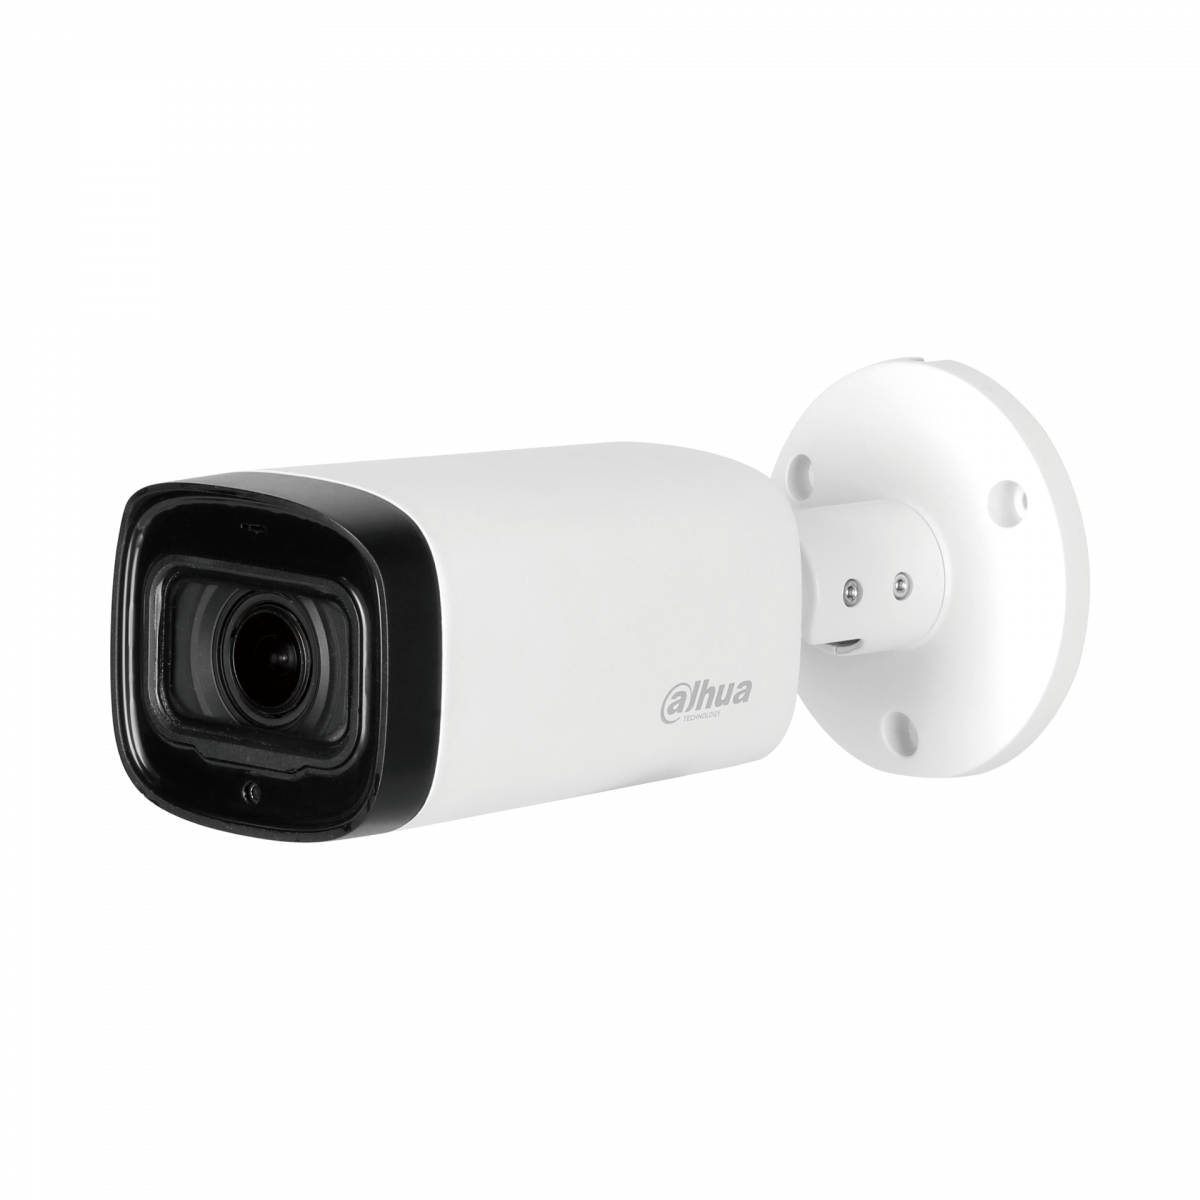 HDCVI видеокамера уличная цилиндрическая Dahua DH-HAC-HFW1230RP-Z-IRE6 2Мп, моториз.объектив 2.7-12мм, ИК до 60м, 12В, IP67